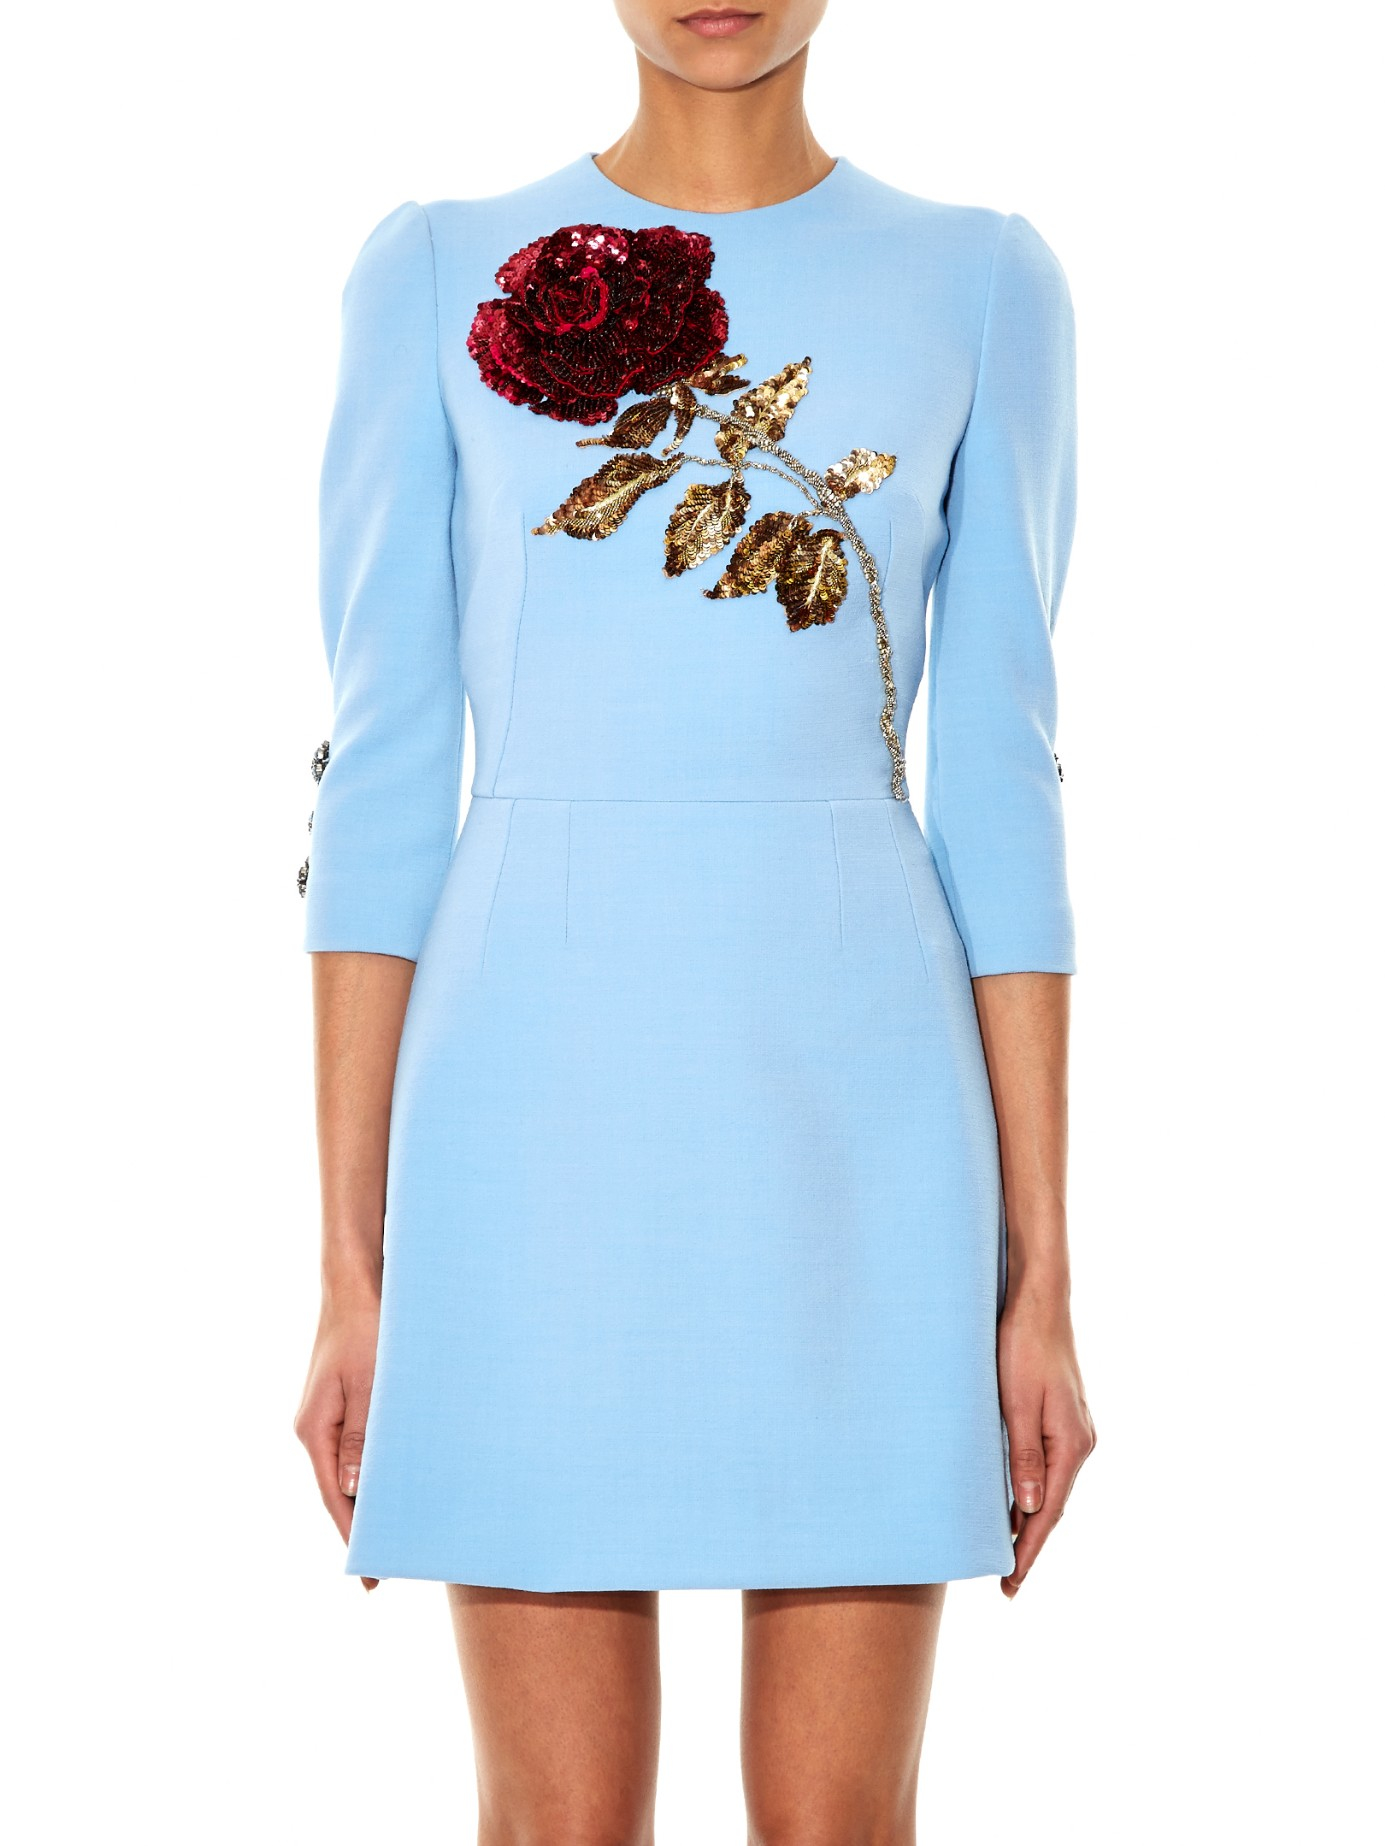 Dolce \u0026 Gabbana Rose Wool Mini Dress in 